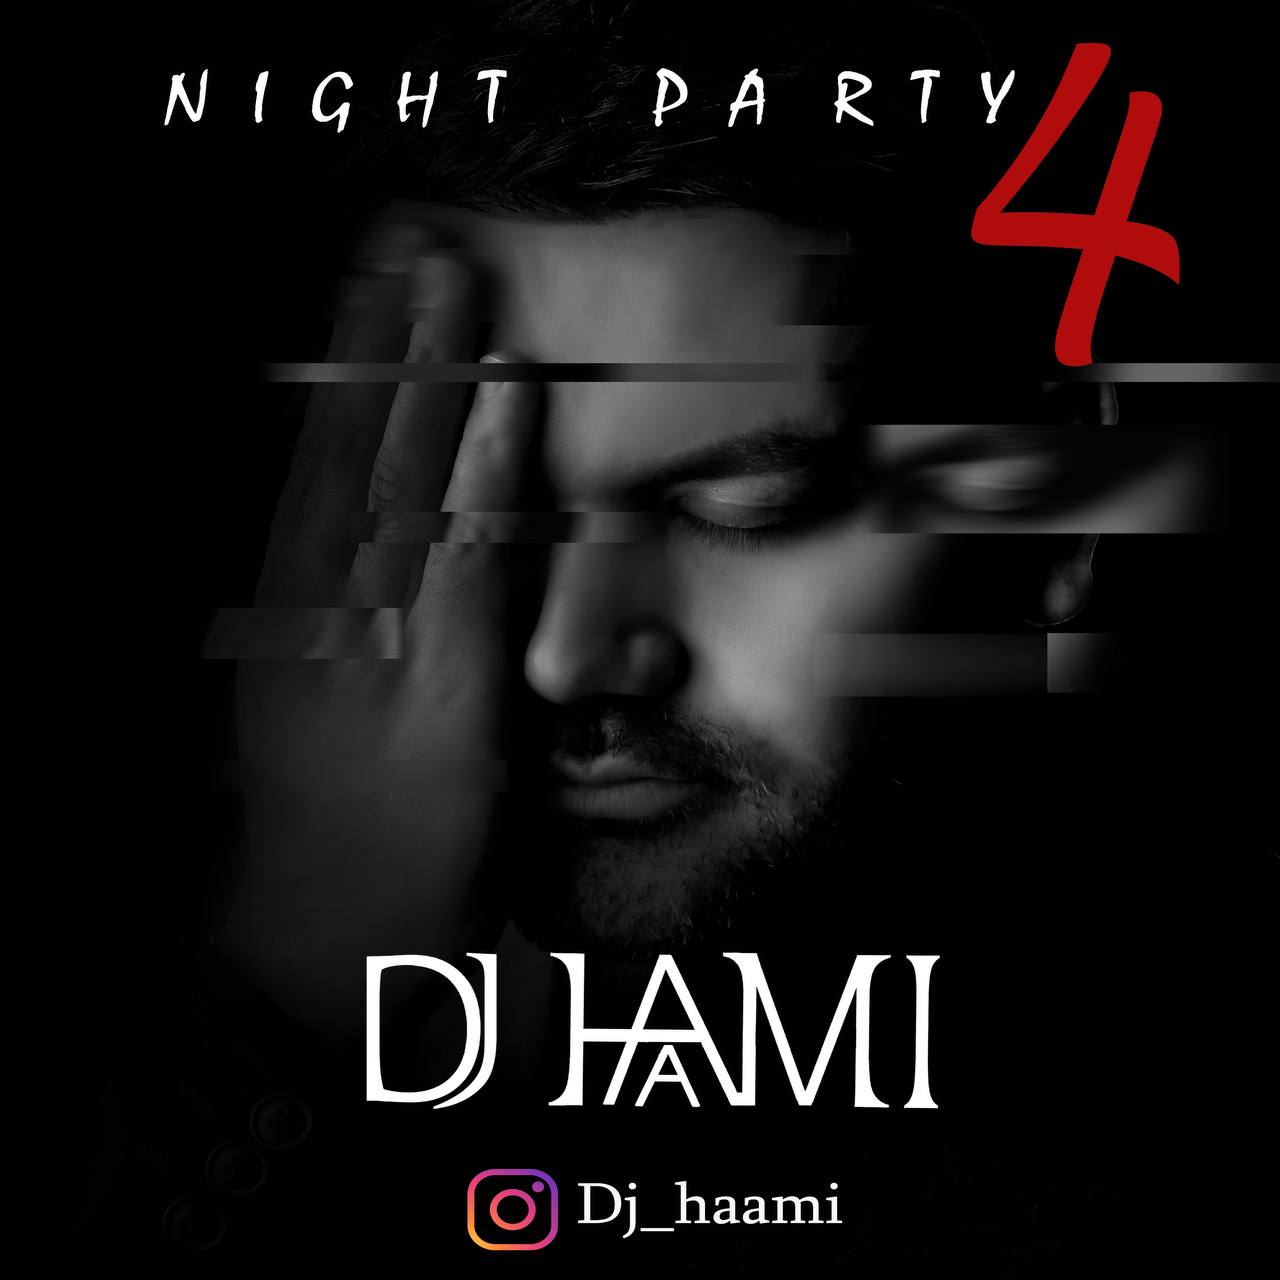 دانلود آهنگ دیجی حامی نایت پارتی ۴ | Dj Haami Night Party 04